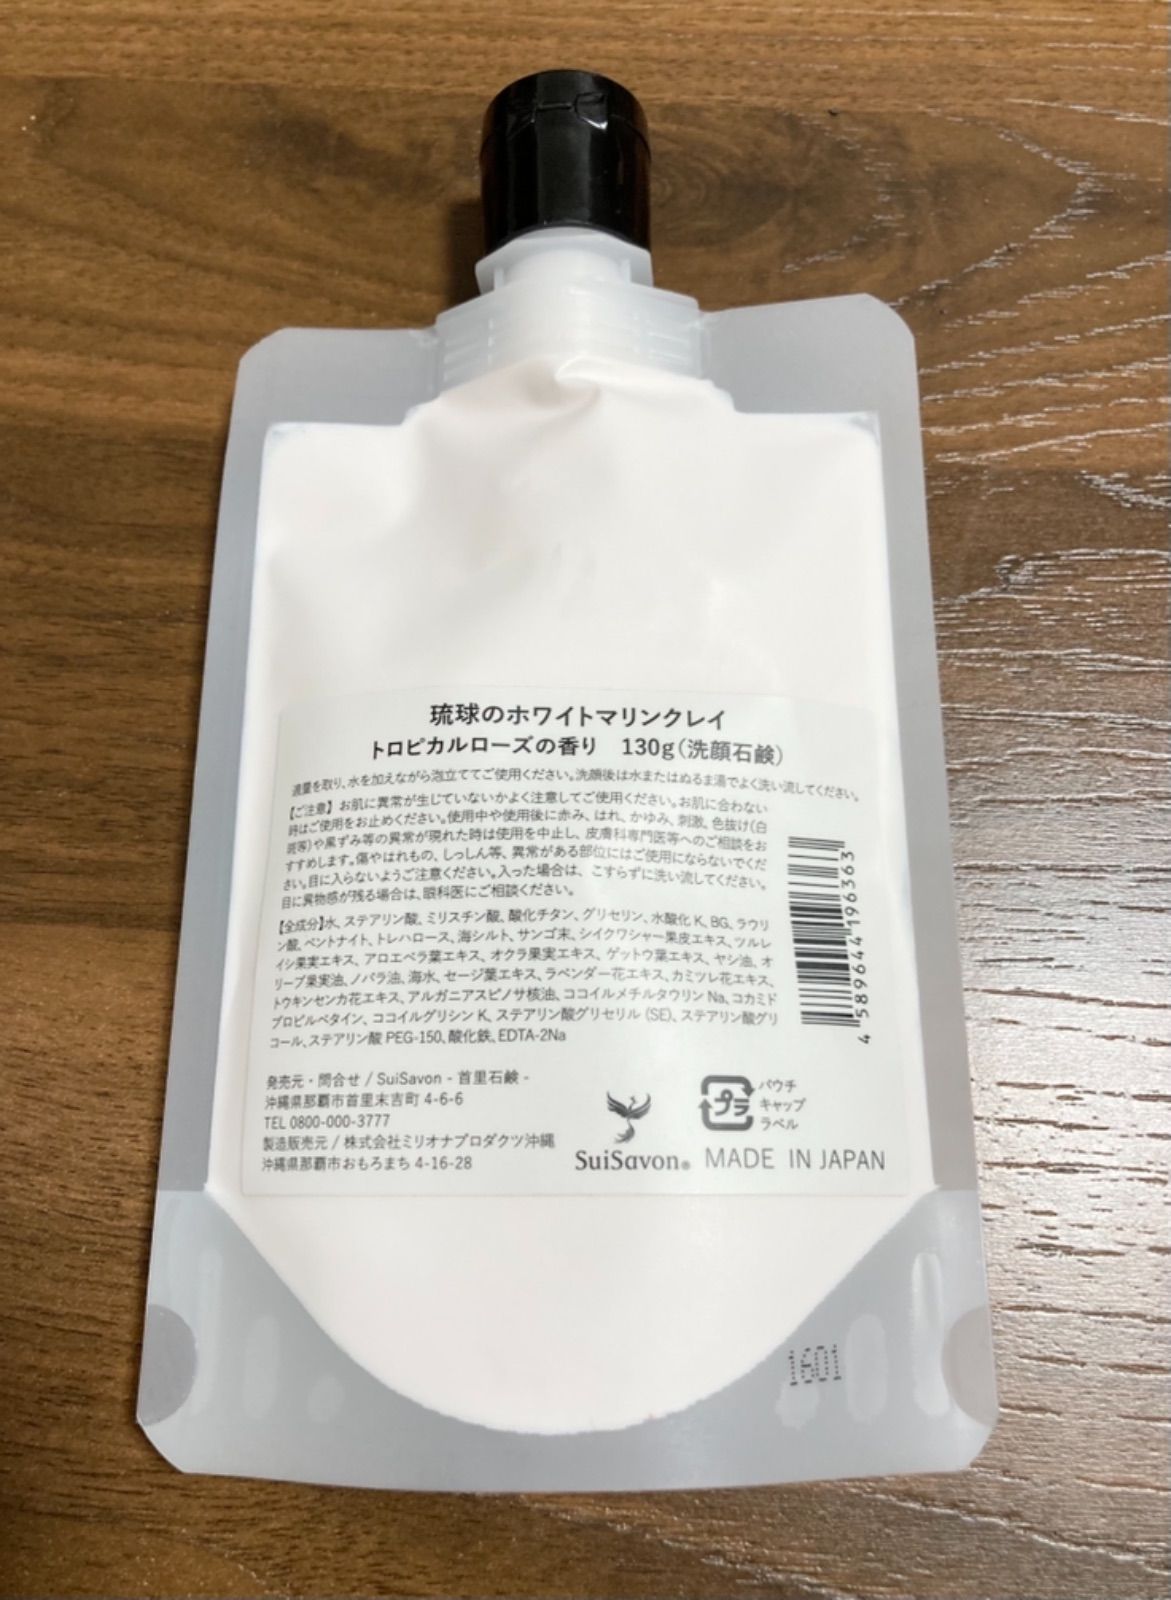 首里石鹸 琉球のホワイトマリンクレイ トロピカルローズ 洗顔石鹸 雑貨ショップ メルカリ